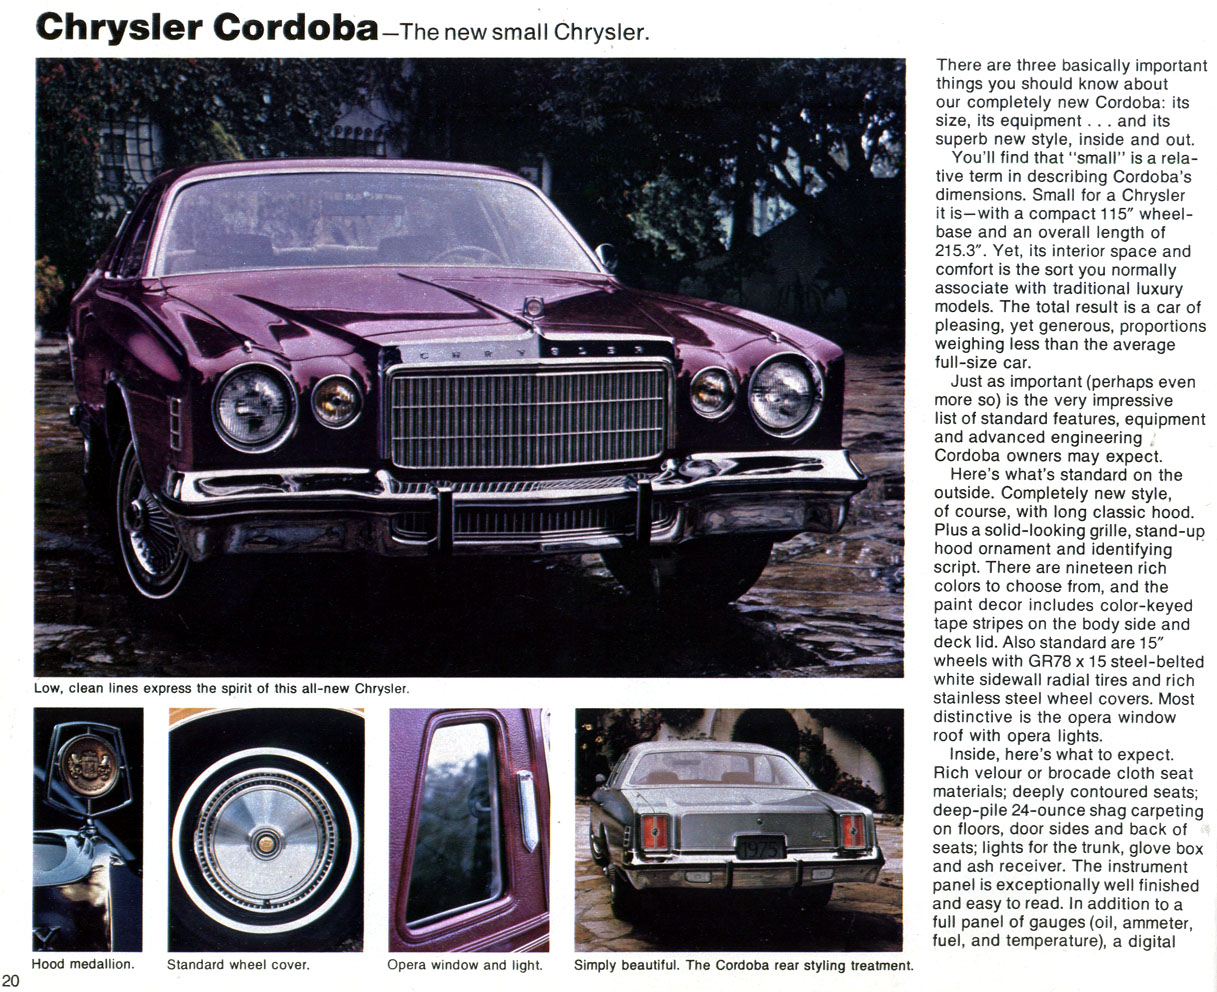 1975_Chrysler-Plymouth-20